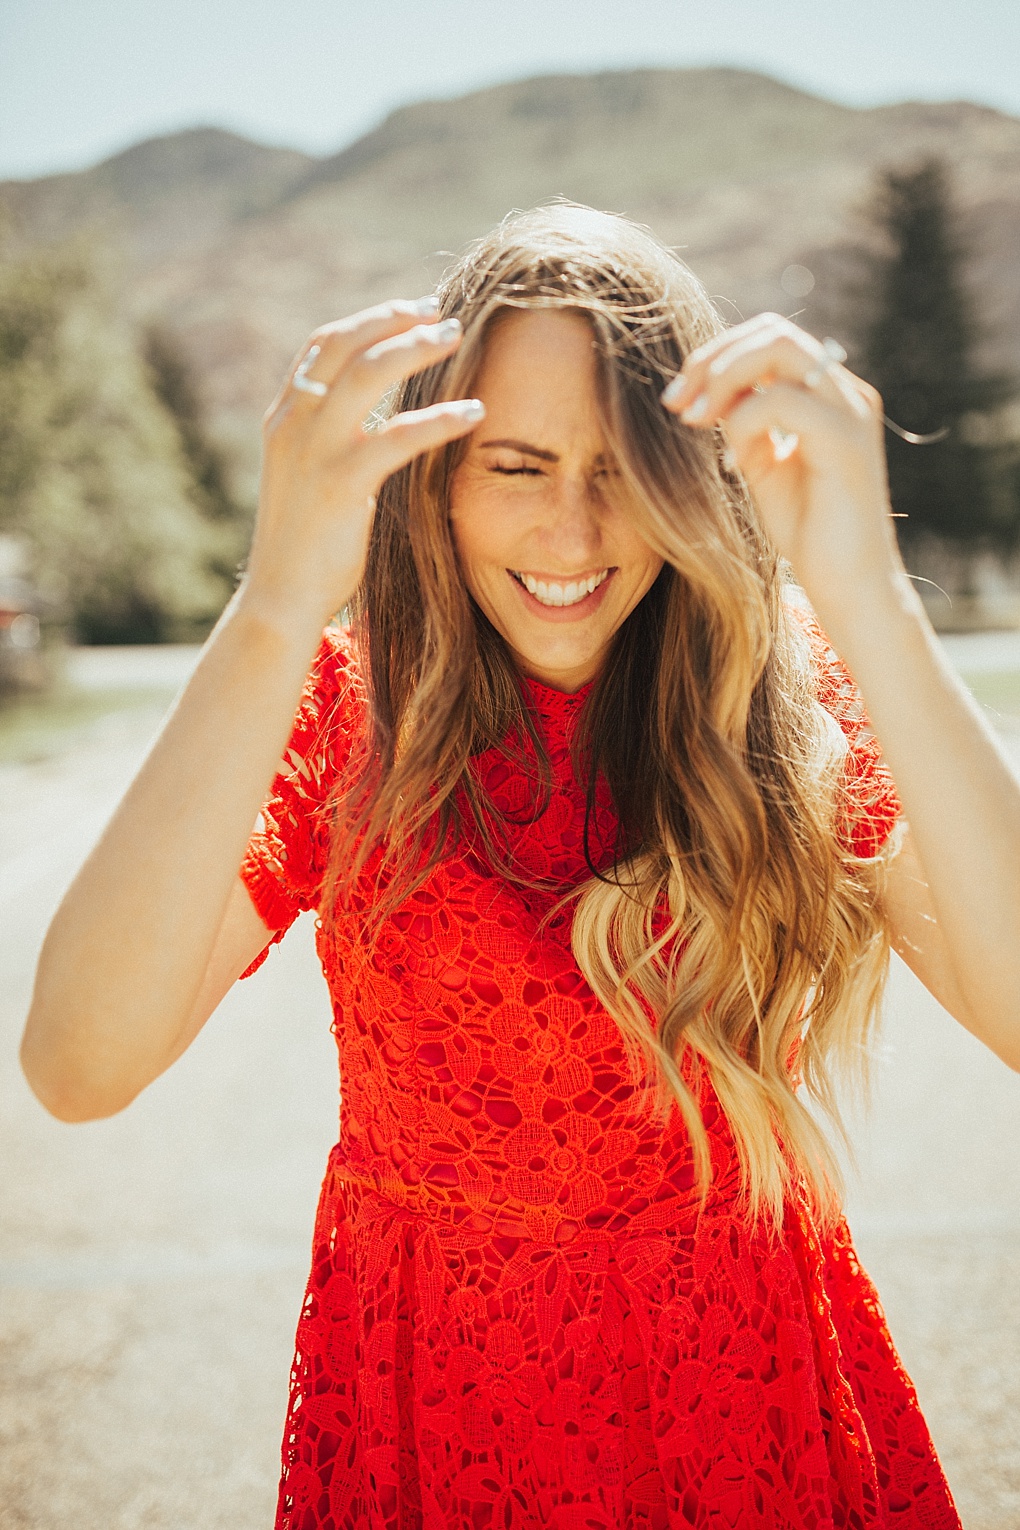 Stylish Red Lace Dress: Dressing Up On Sundays by Utah fashion blogger Dani Marie